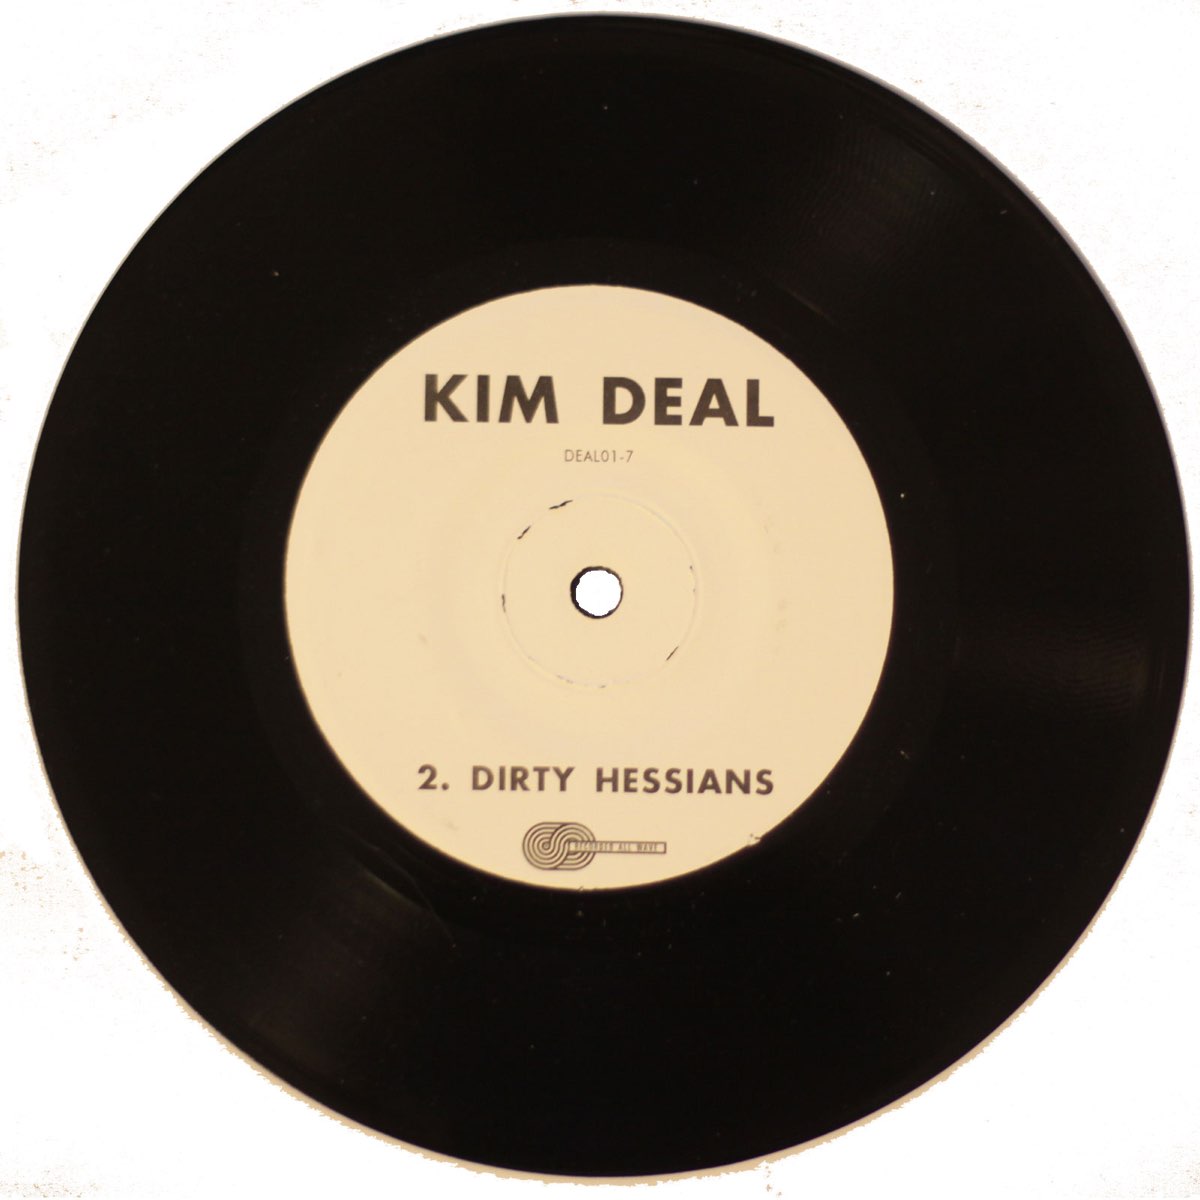 Deal песня. Kim deal 1989.